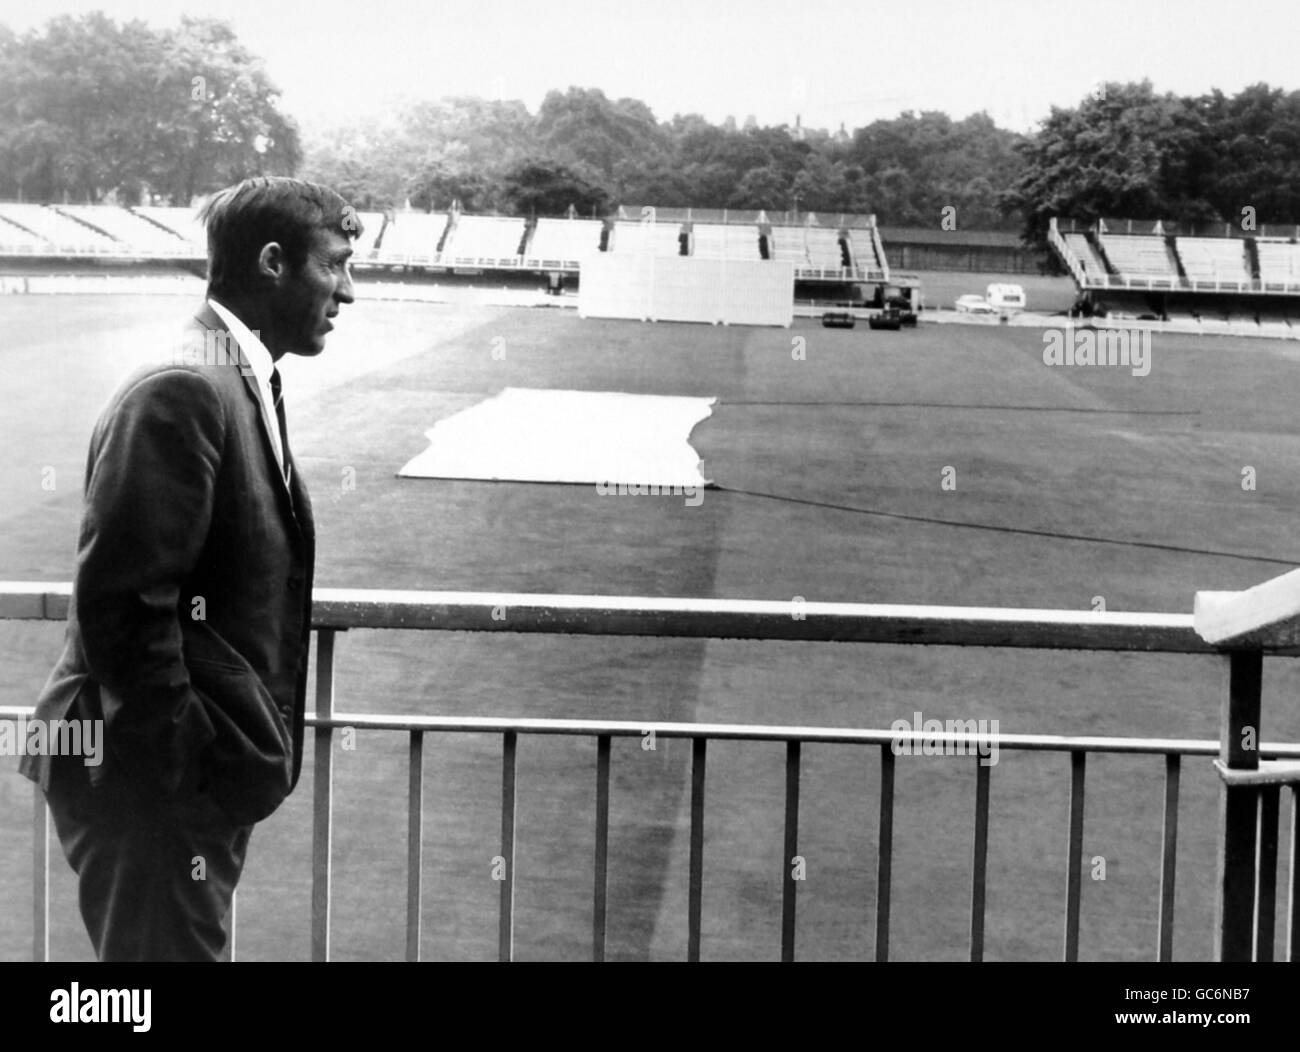 Cricket - Middlesex / Leicestershire - Lord's Cricket Ground. PETER PARFITT (Captain of Middlesex) untersucht die düstere Wetterszene und wurde schließlich ohne Überstarten abgesagt. Stockfoto